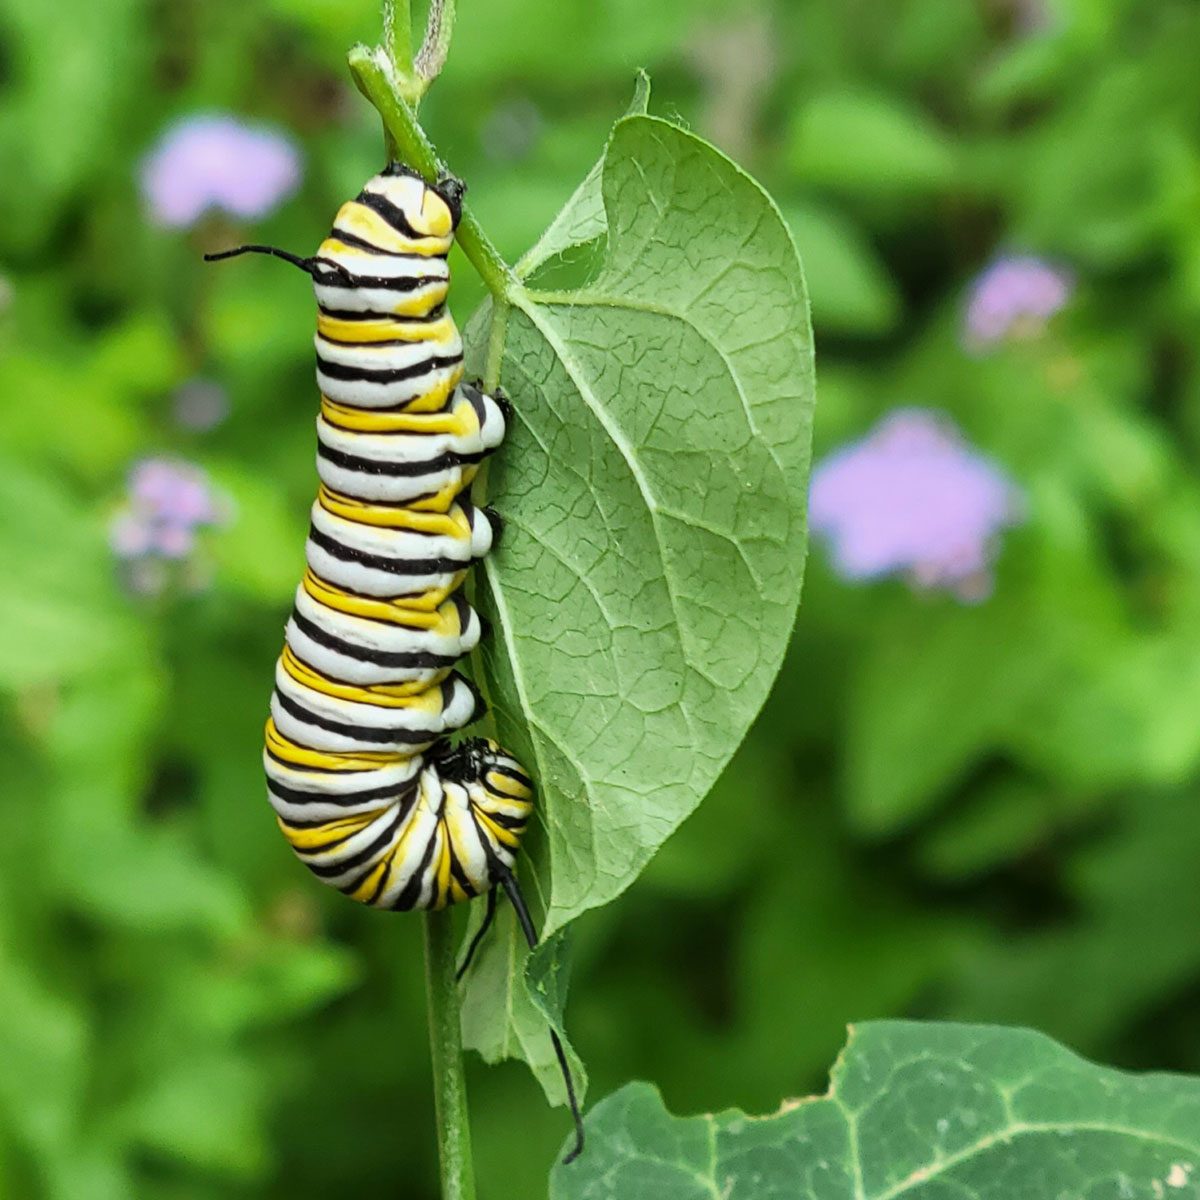 Caterpillar on Milkweed plant